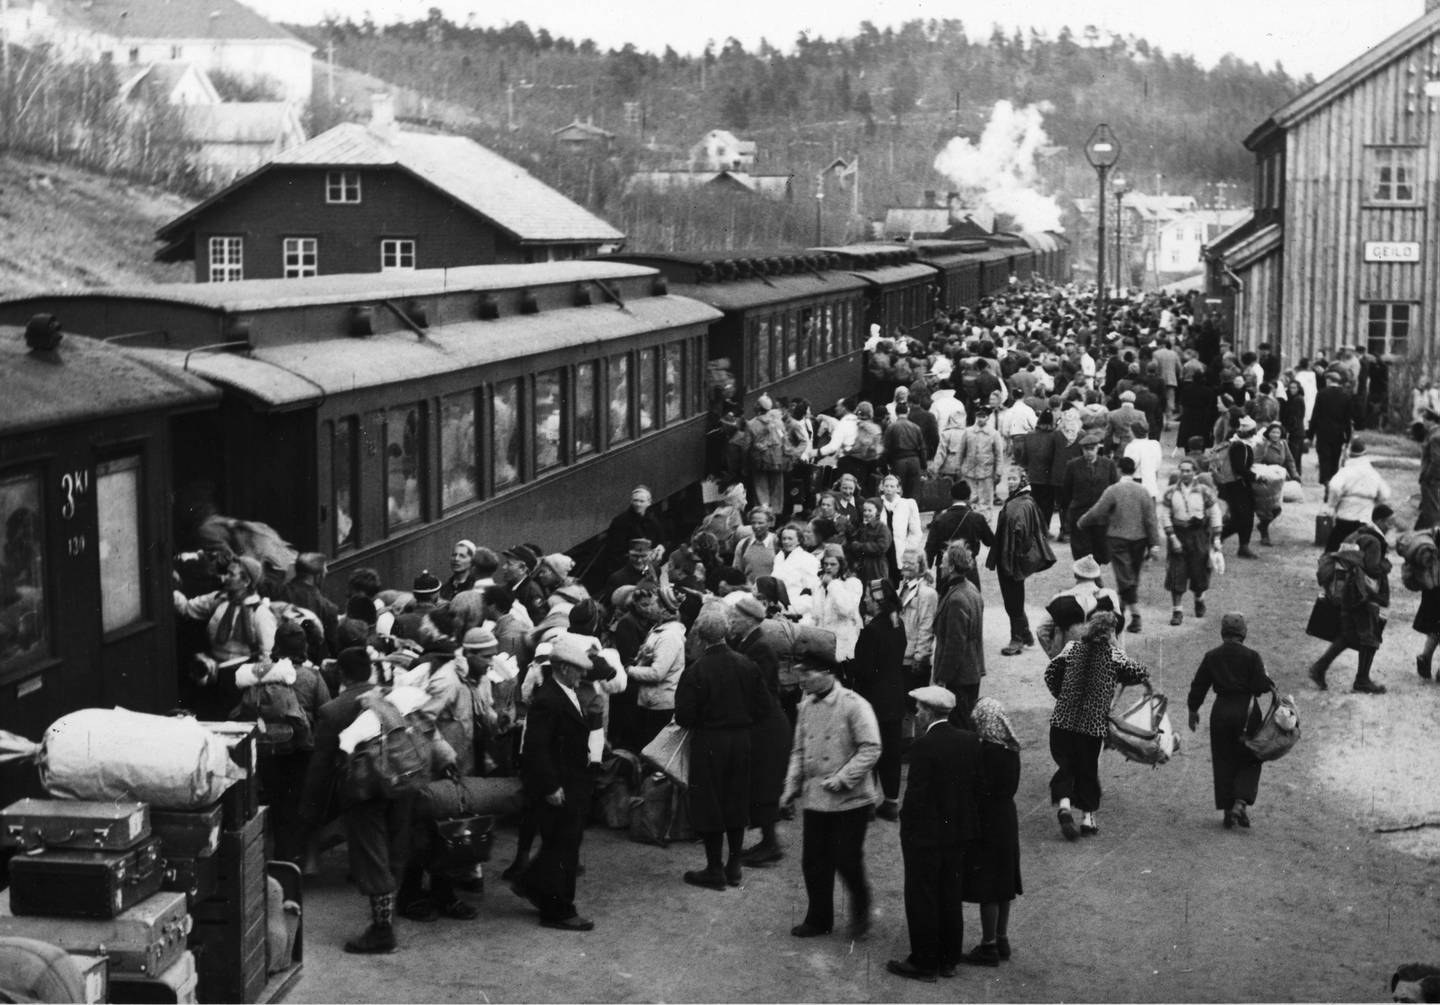 Tog har til tider vært et veldig populært framkomstmiddel i Norge. Det viser med all tydelighet dette overbefolkede bildet fra Geilo stasjon, tatt ved påsketider rundt 1950.